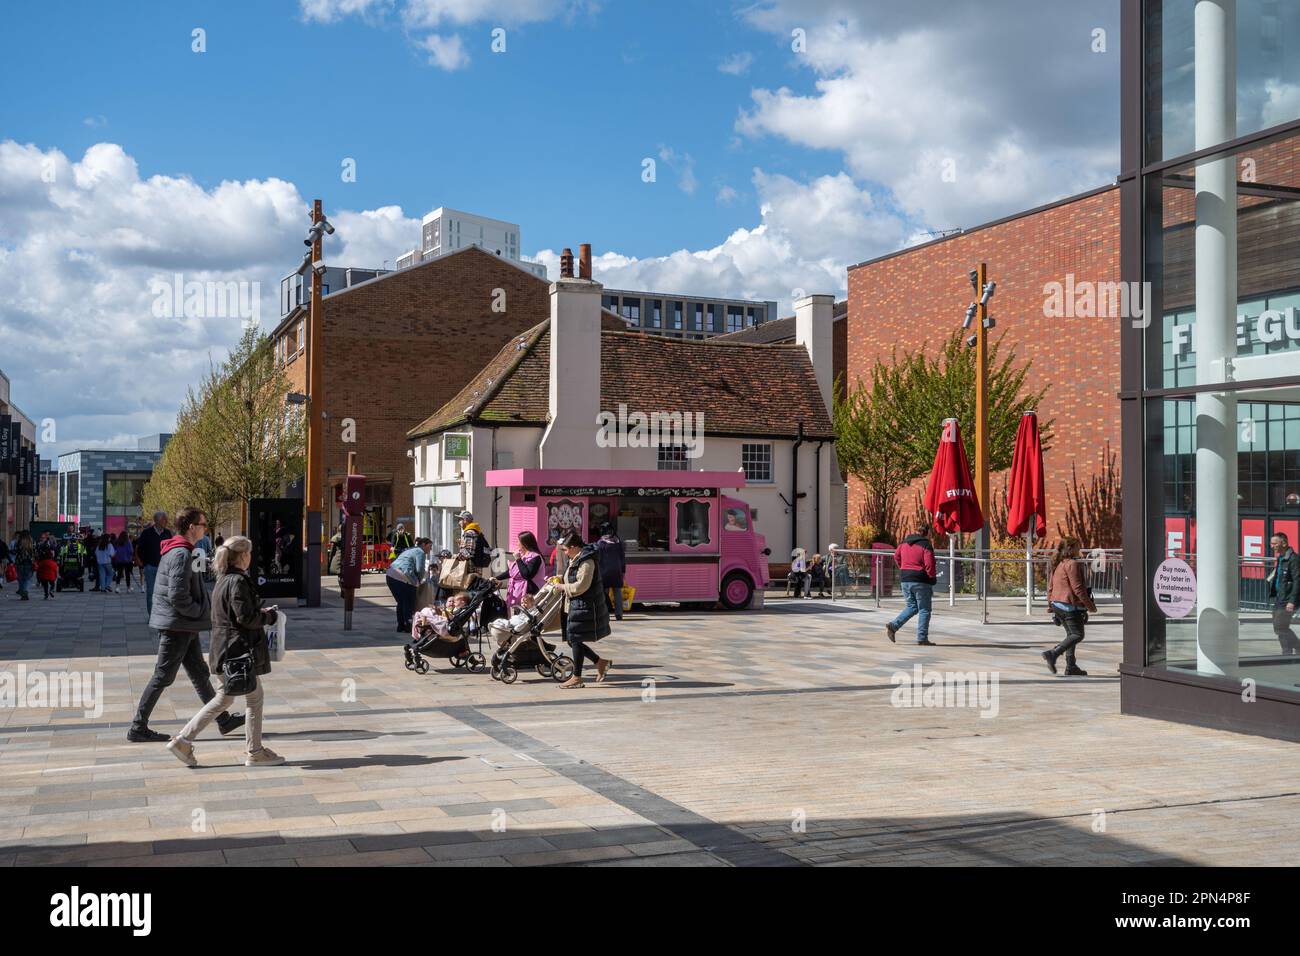 Le Lexicon Center à Bracknell, Berkshire, Angleterre, Royaume-Uni, lors d'une journée ensoleillée avec des gens qui font du shopping et se détendent Banque D'Images